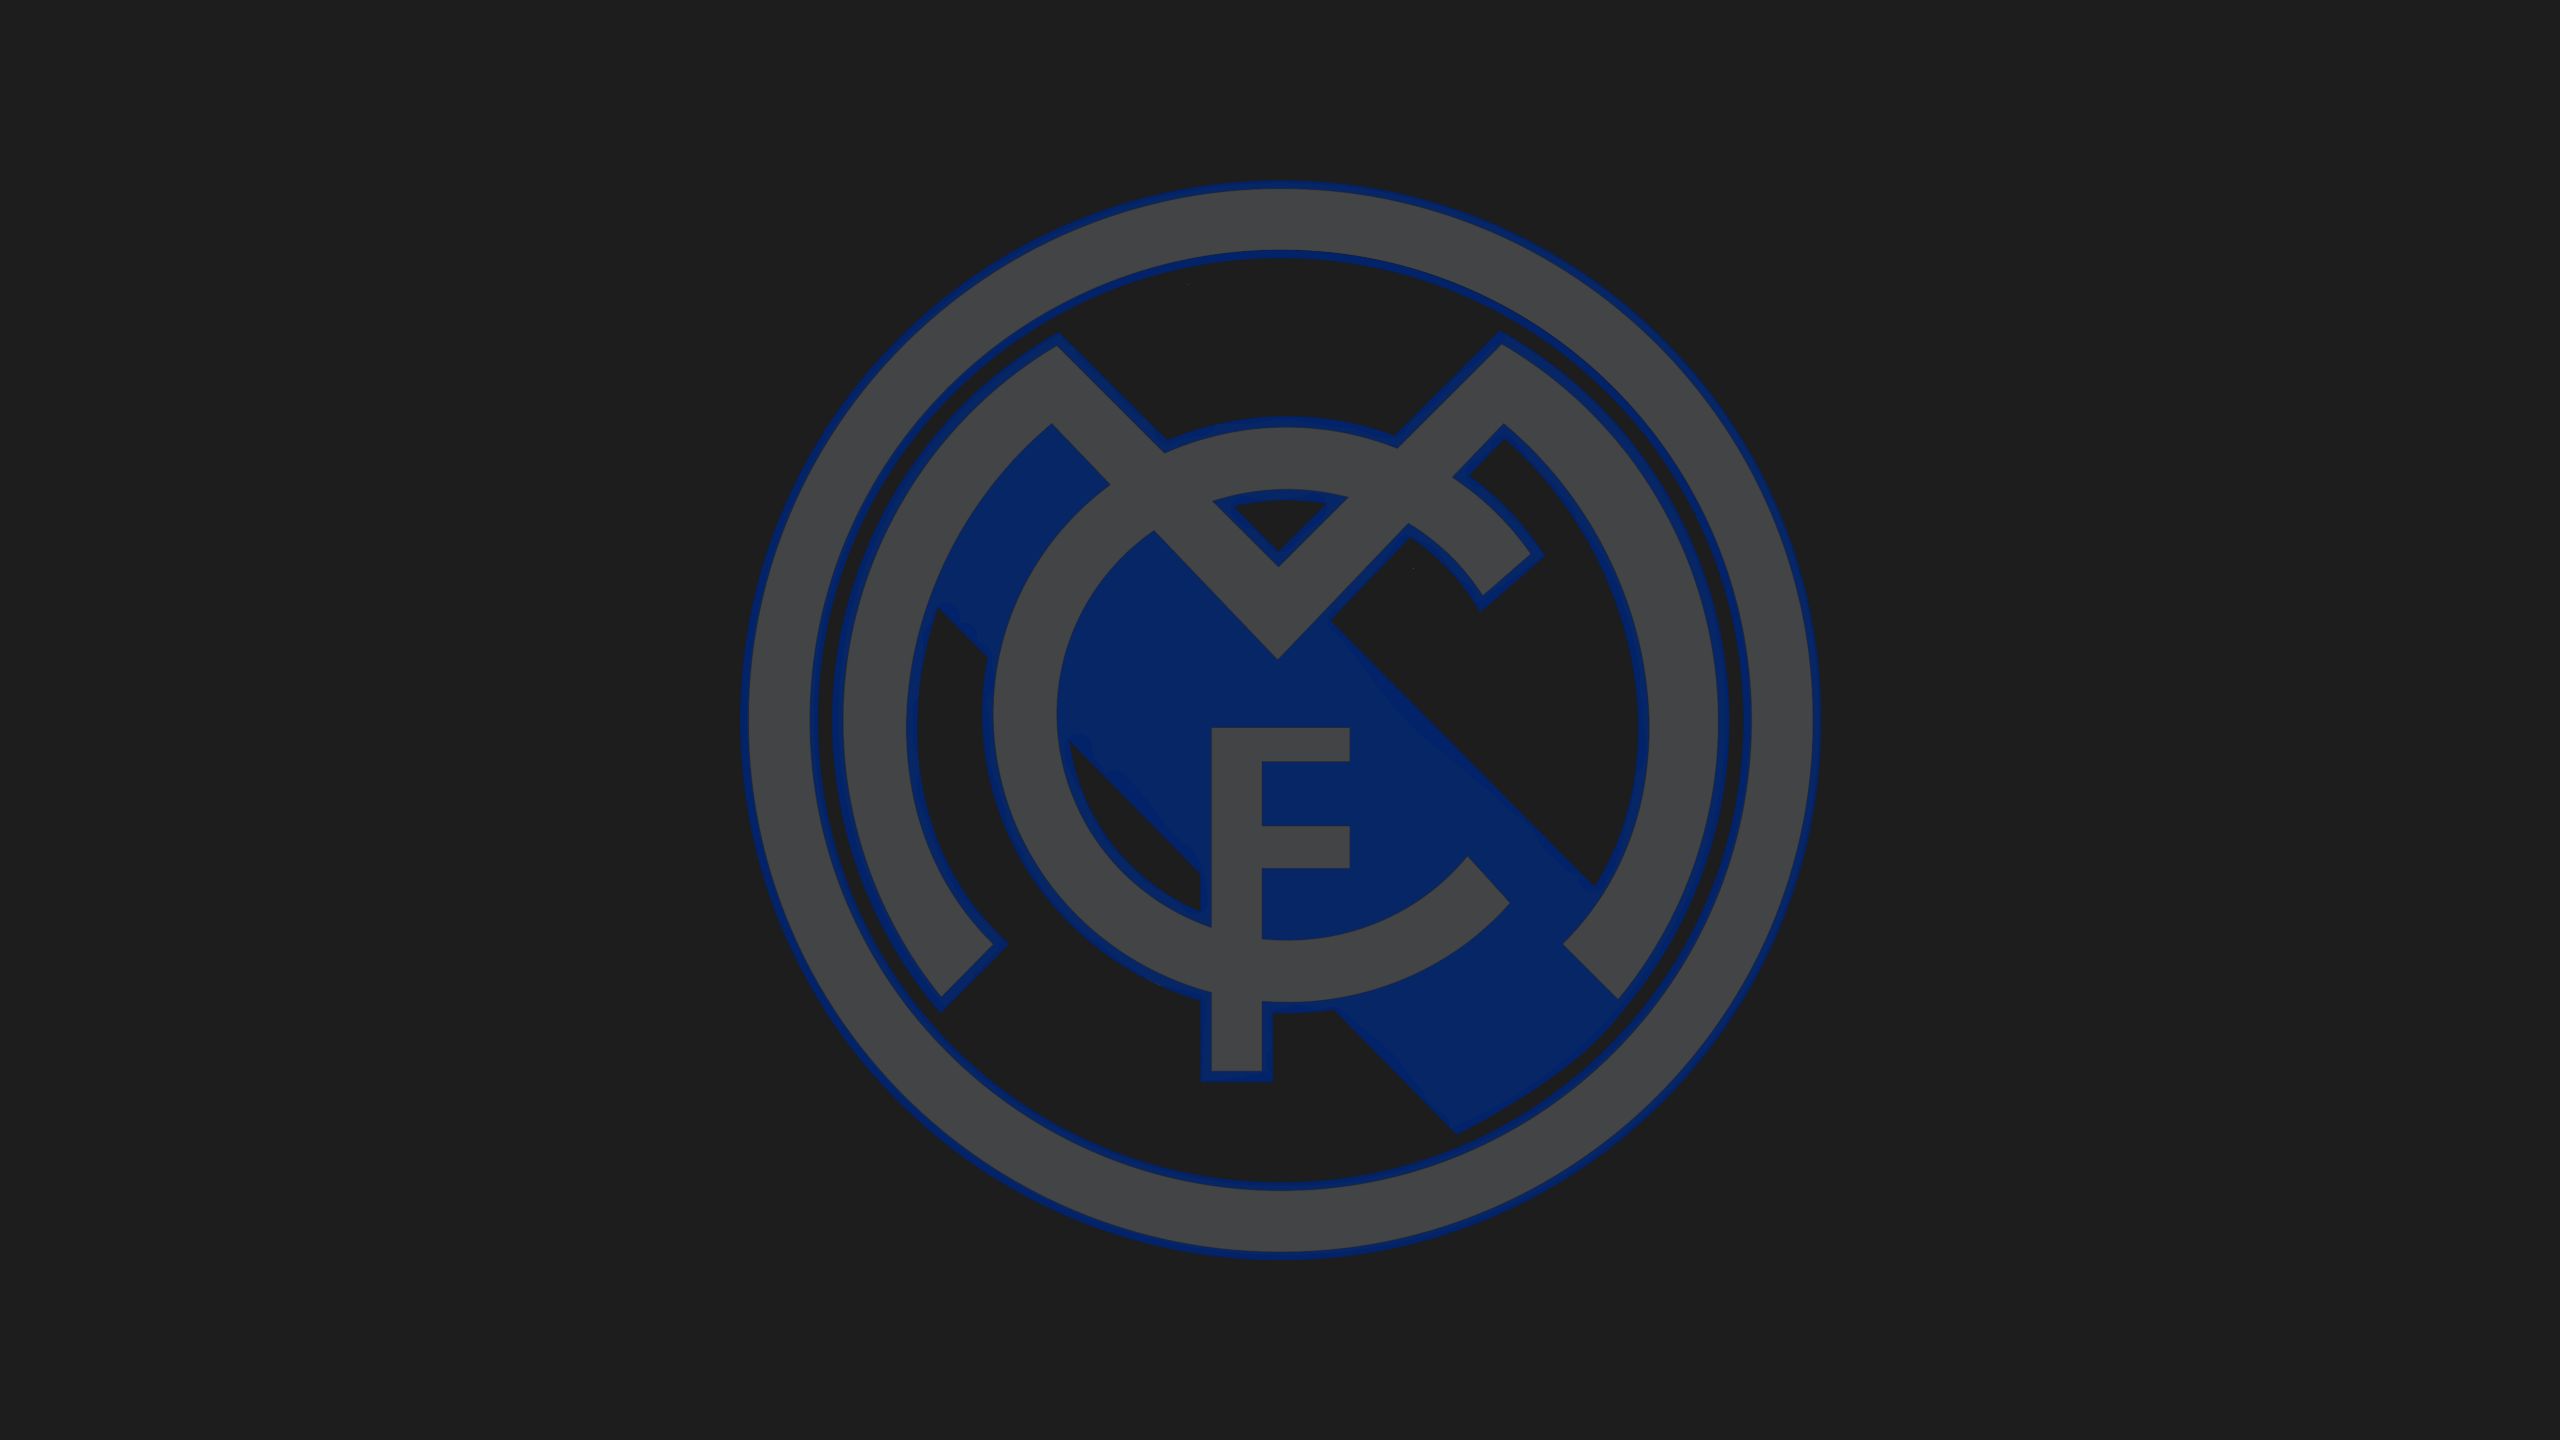 Free download wallpaper Sports, Symbol, Logo, Emblem, Crest, Soccer, Real Madrid C F on your PC desktop